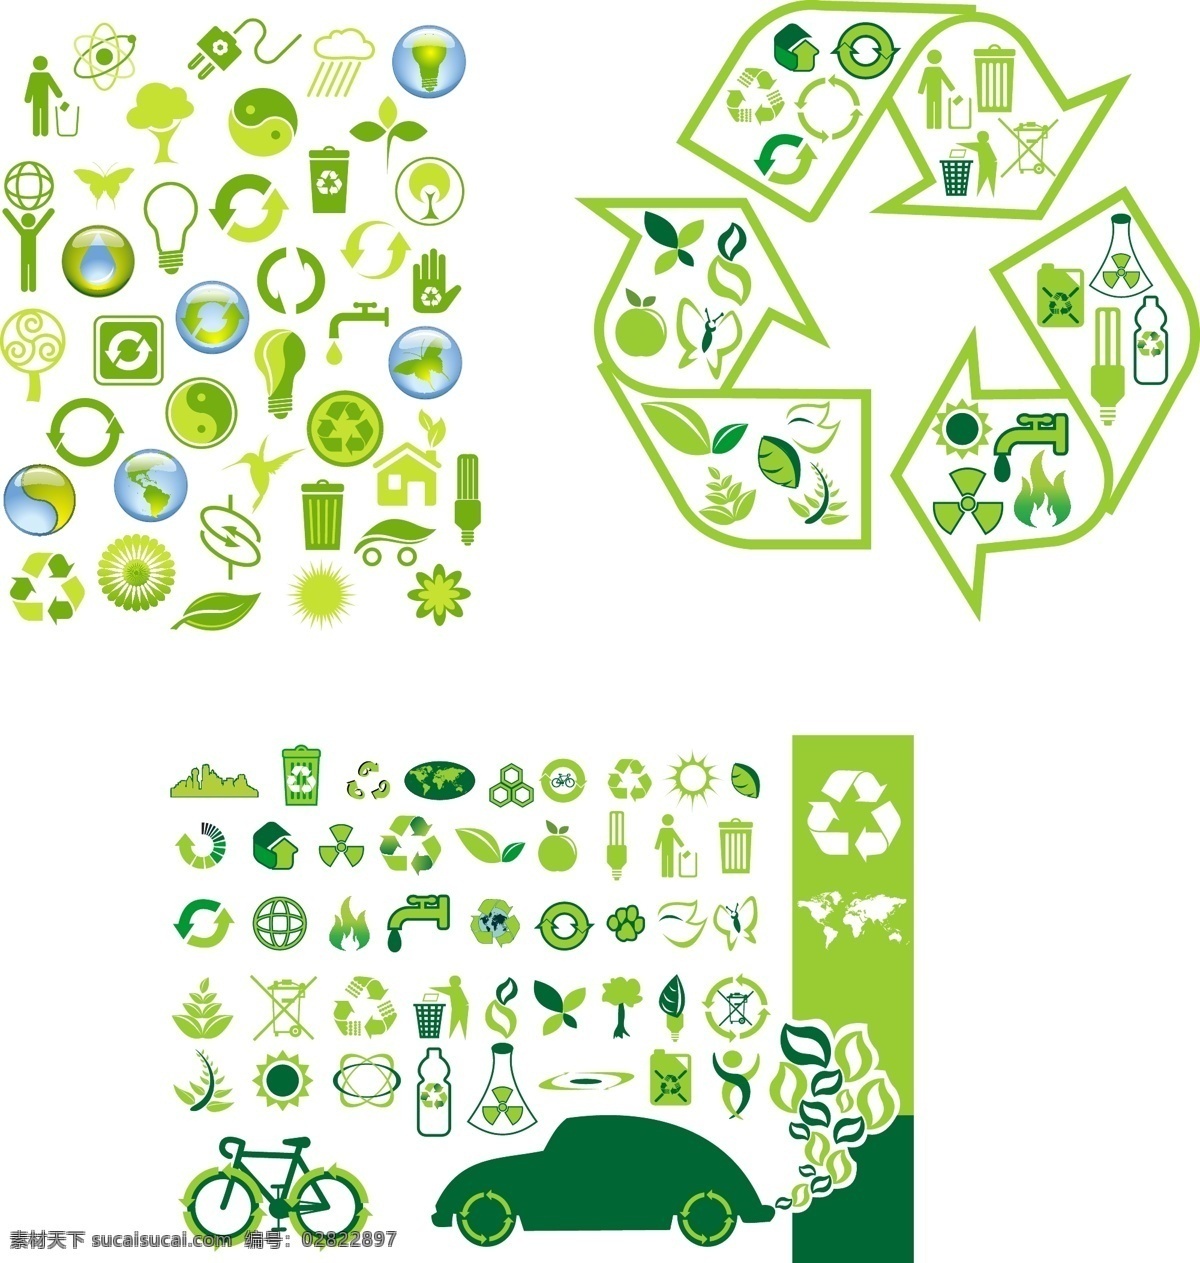 款 环保 主题 图标 矢量 矢量图标 绿色 汽车 树木 循环 资源 回收 地球 矢量图 小图标 共享素材 标志图标 其他图标